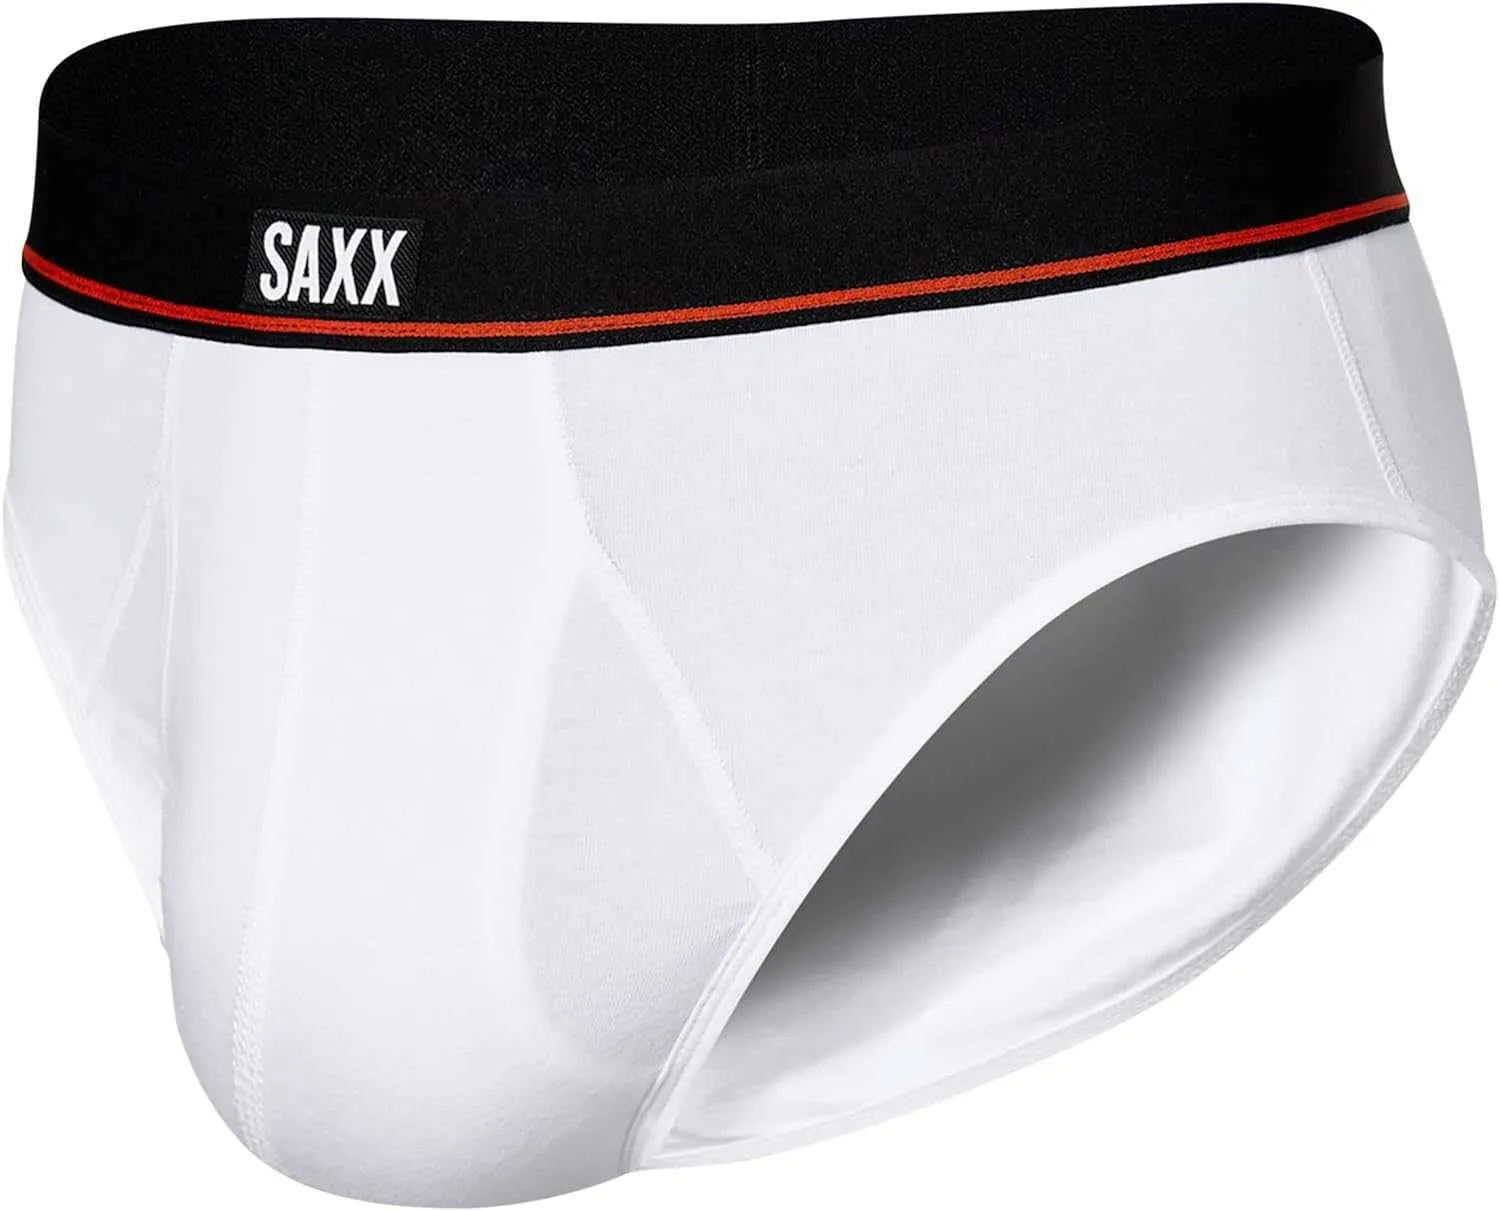 SAXX Mens Underwear Non Stop Elastic Cotton Underwear Built In Bag